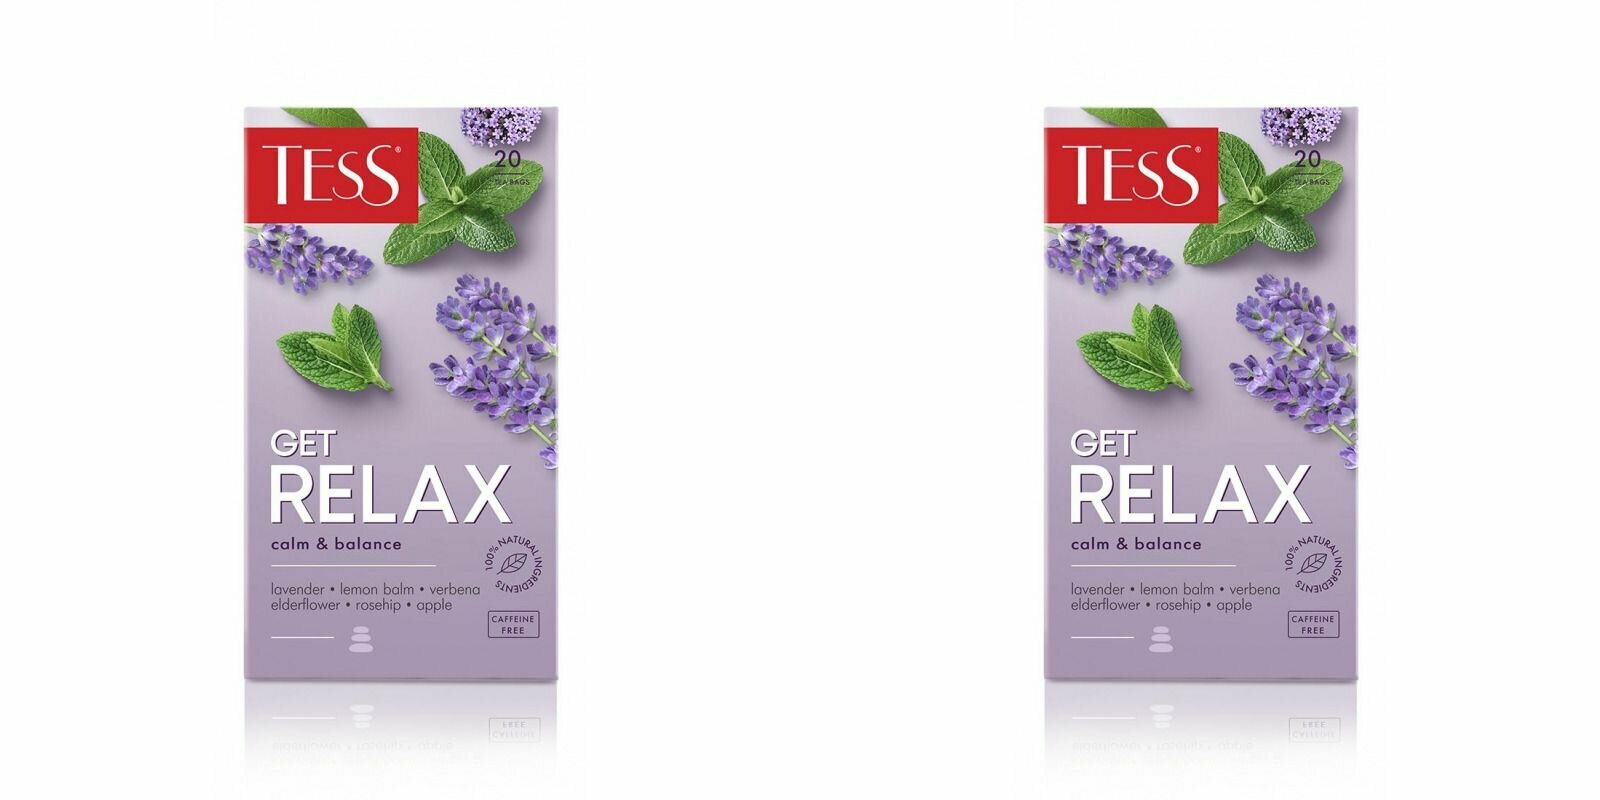 Tess Чай в пакетиках Get Relax с добавками, 20 шт, 2 уп